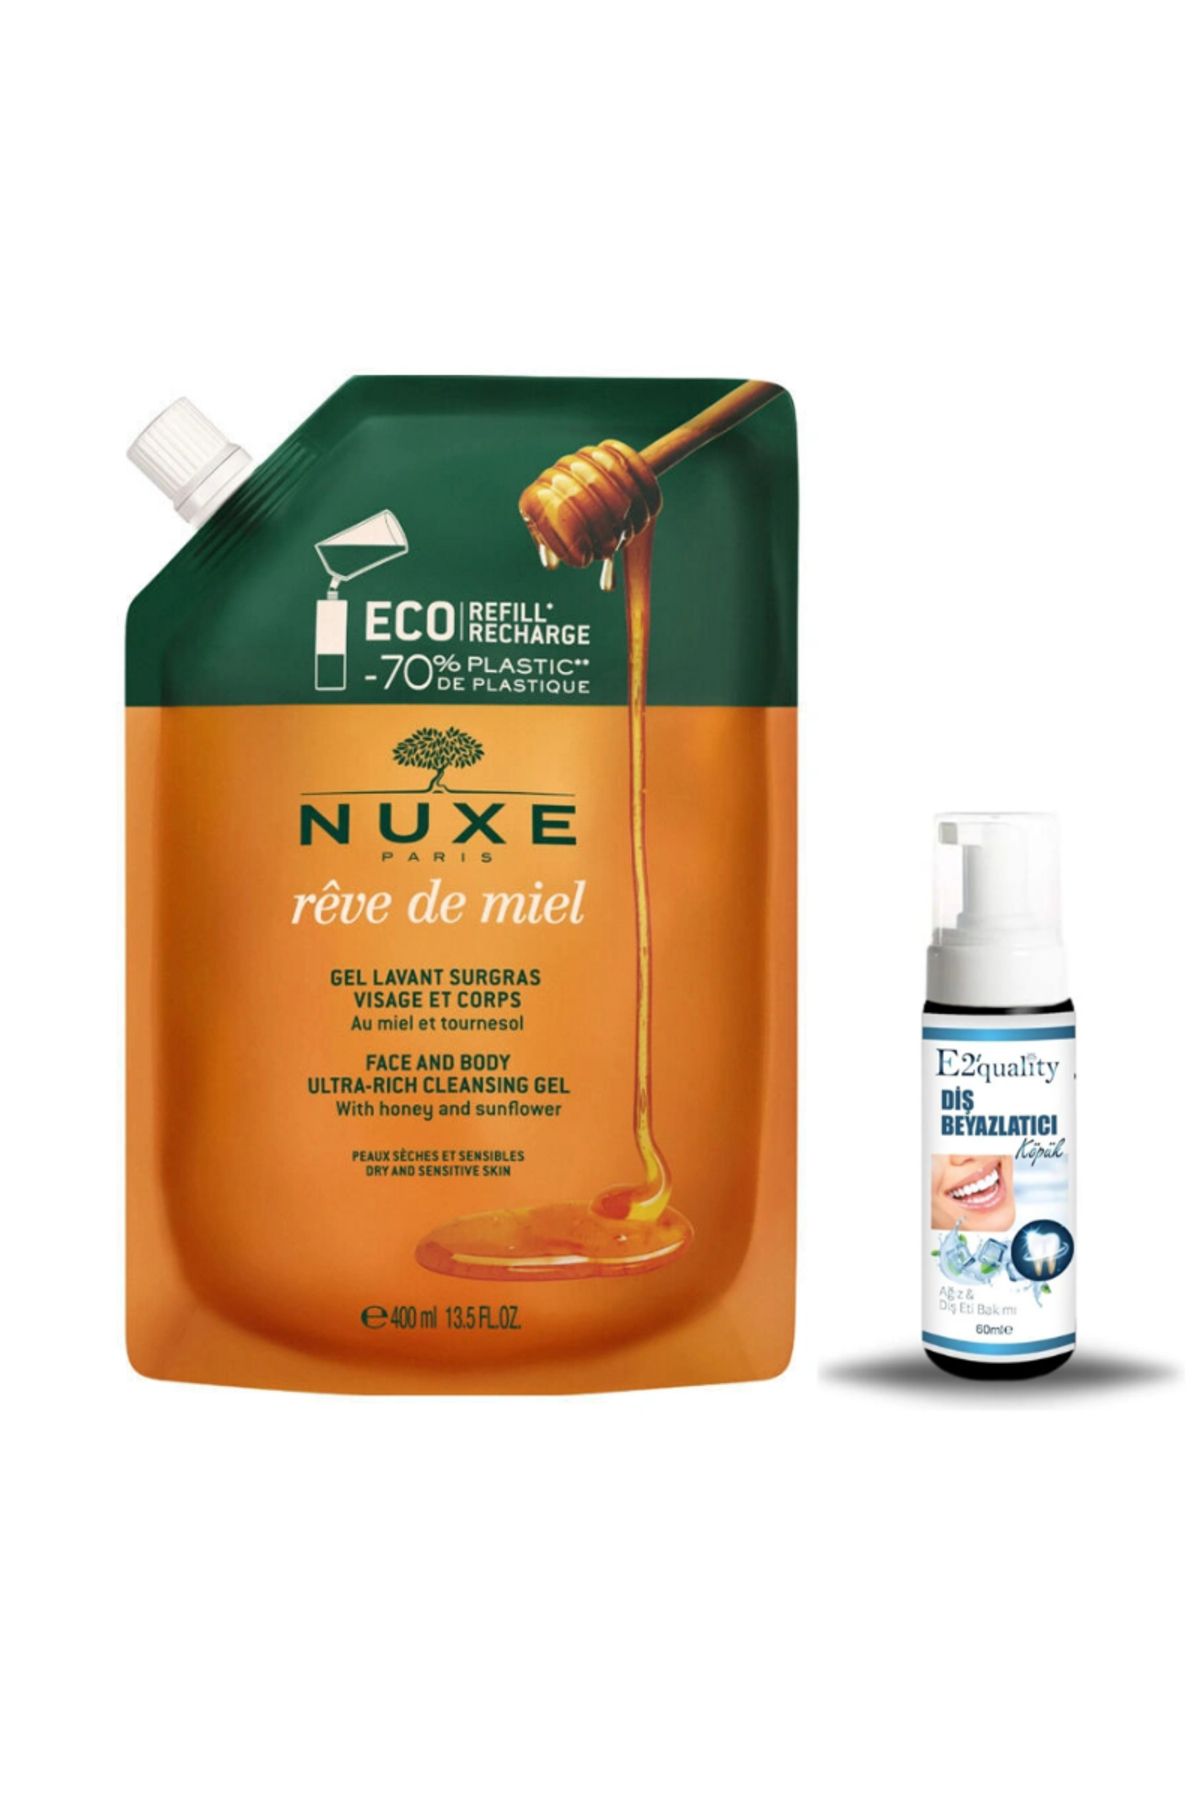 Nuxe Reve de Miel Face and Body Ultra Rich Cleansing Gel 400 ml - Refill + Hediye Diş Beyazlatıcı Köpük